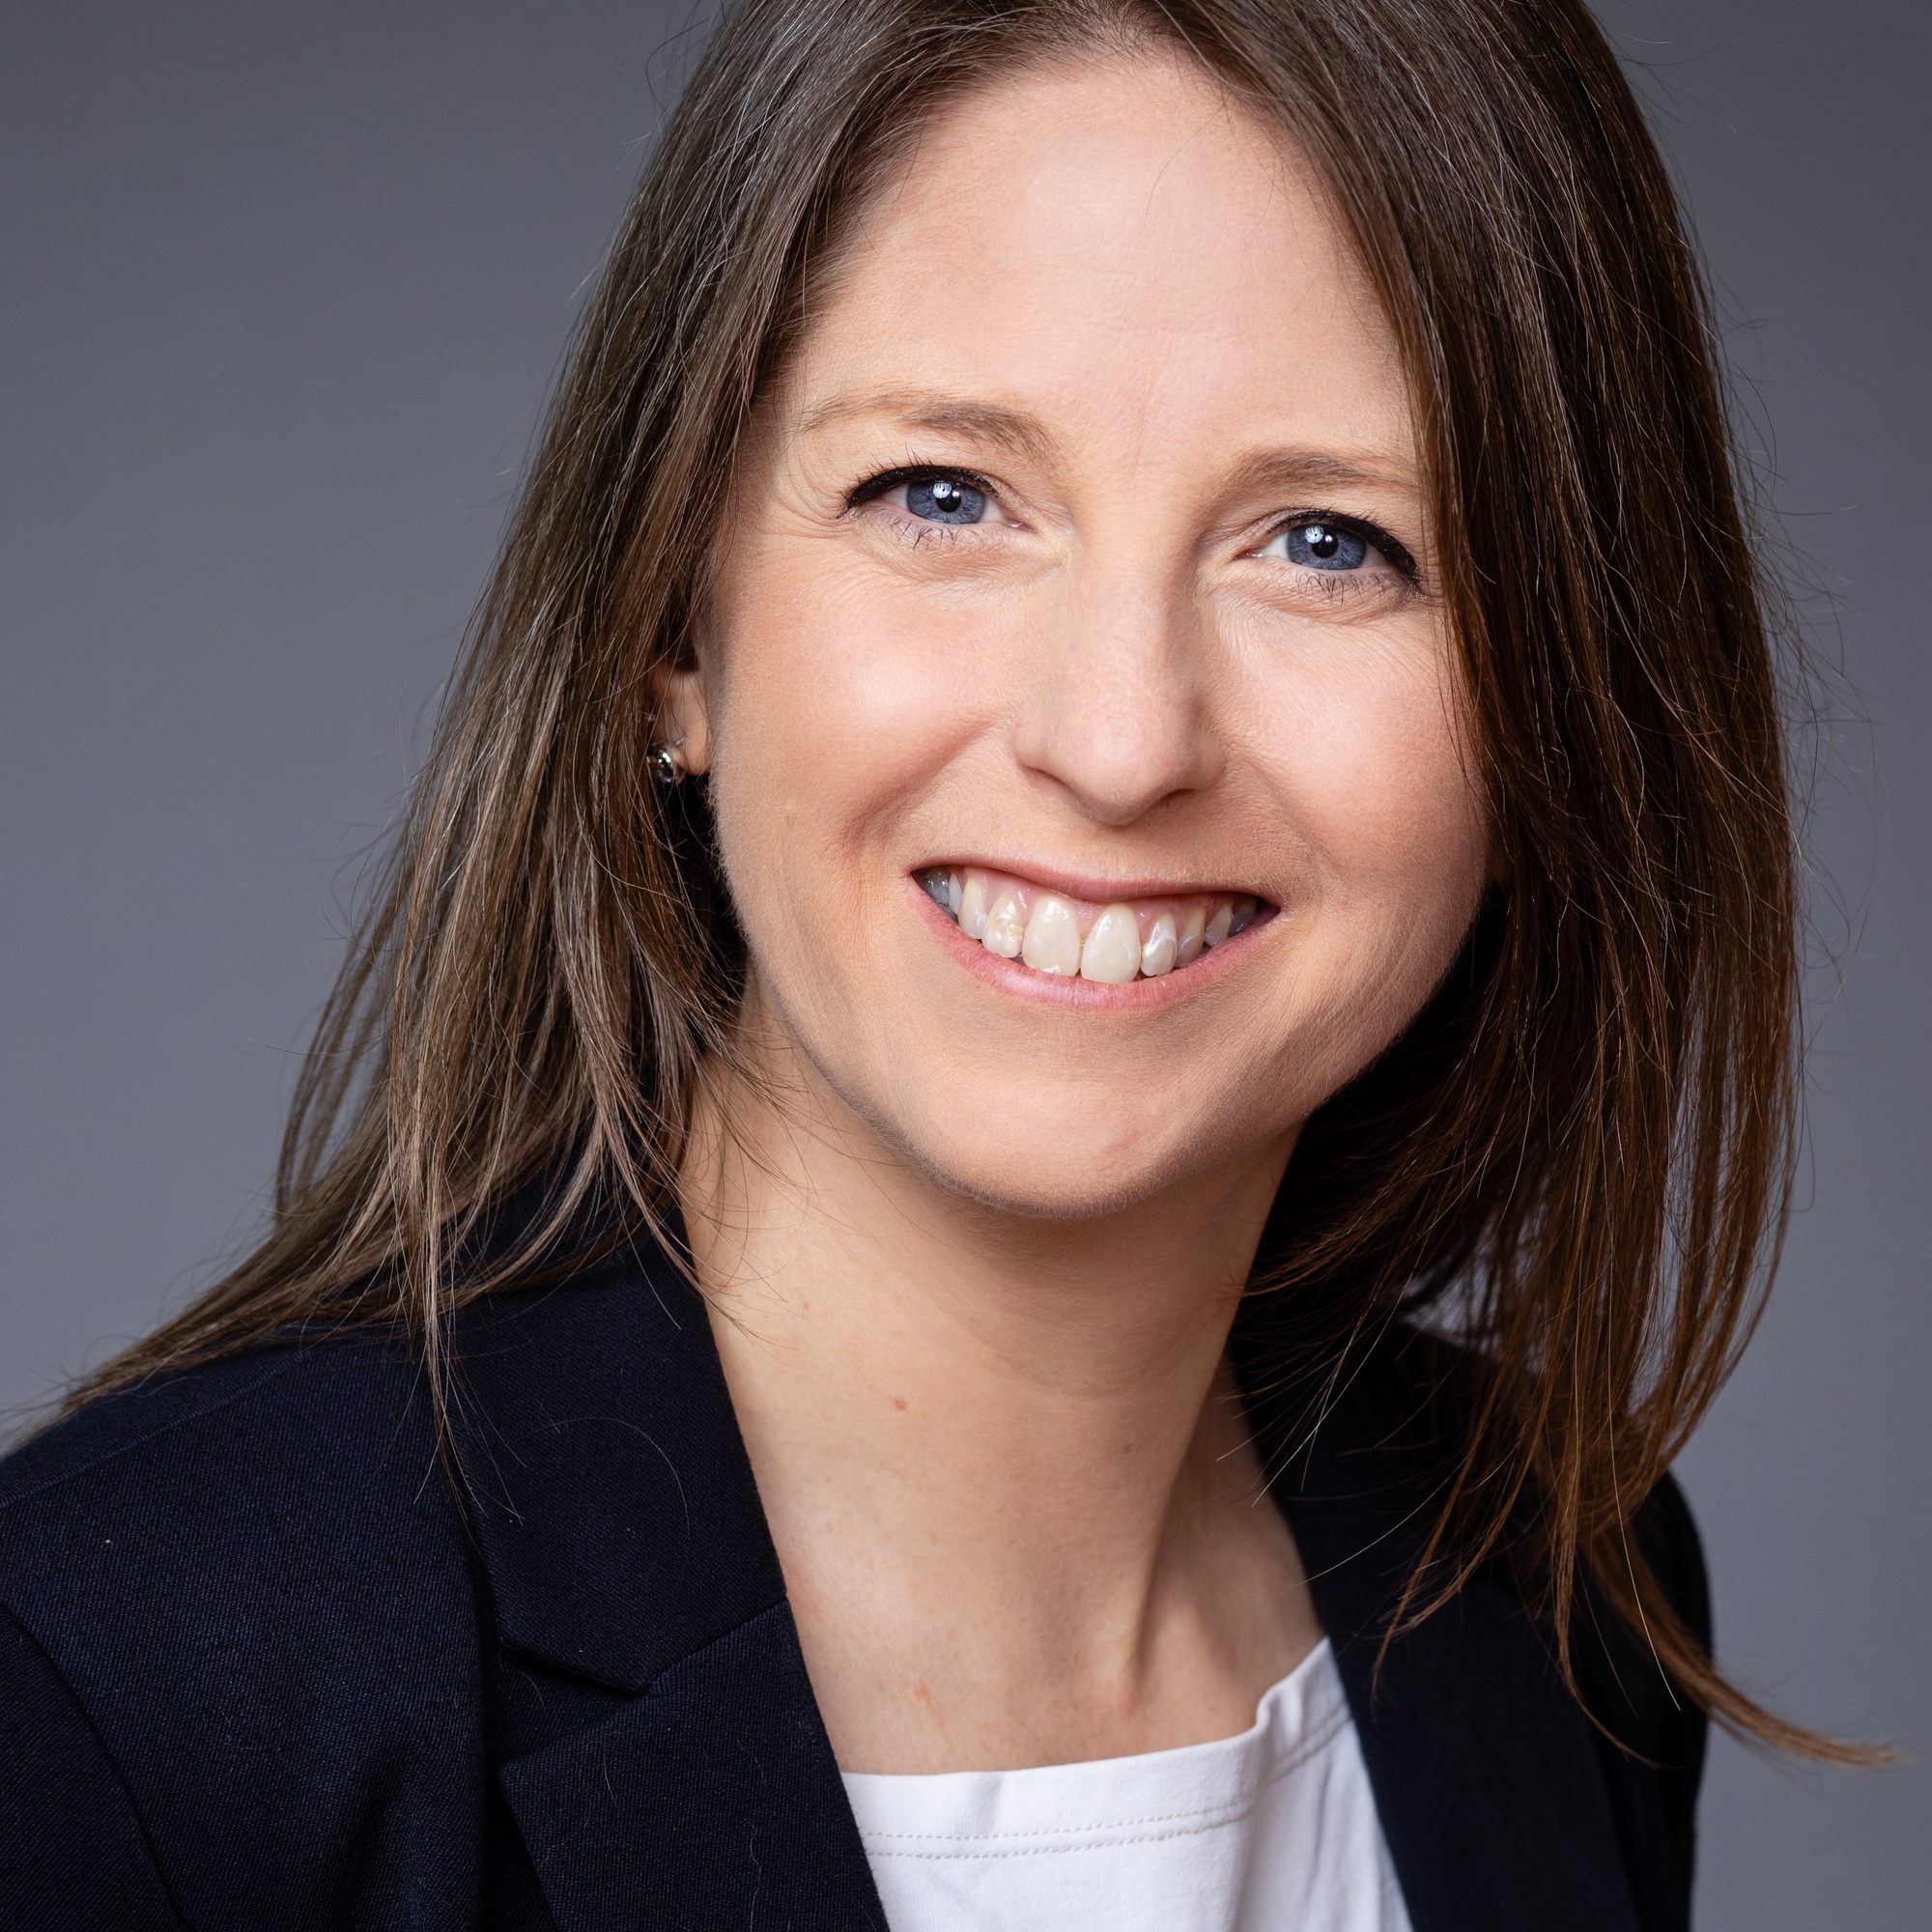 10. Helen Mannion, global data director, Specsavers